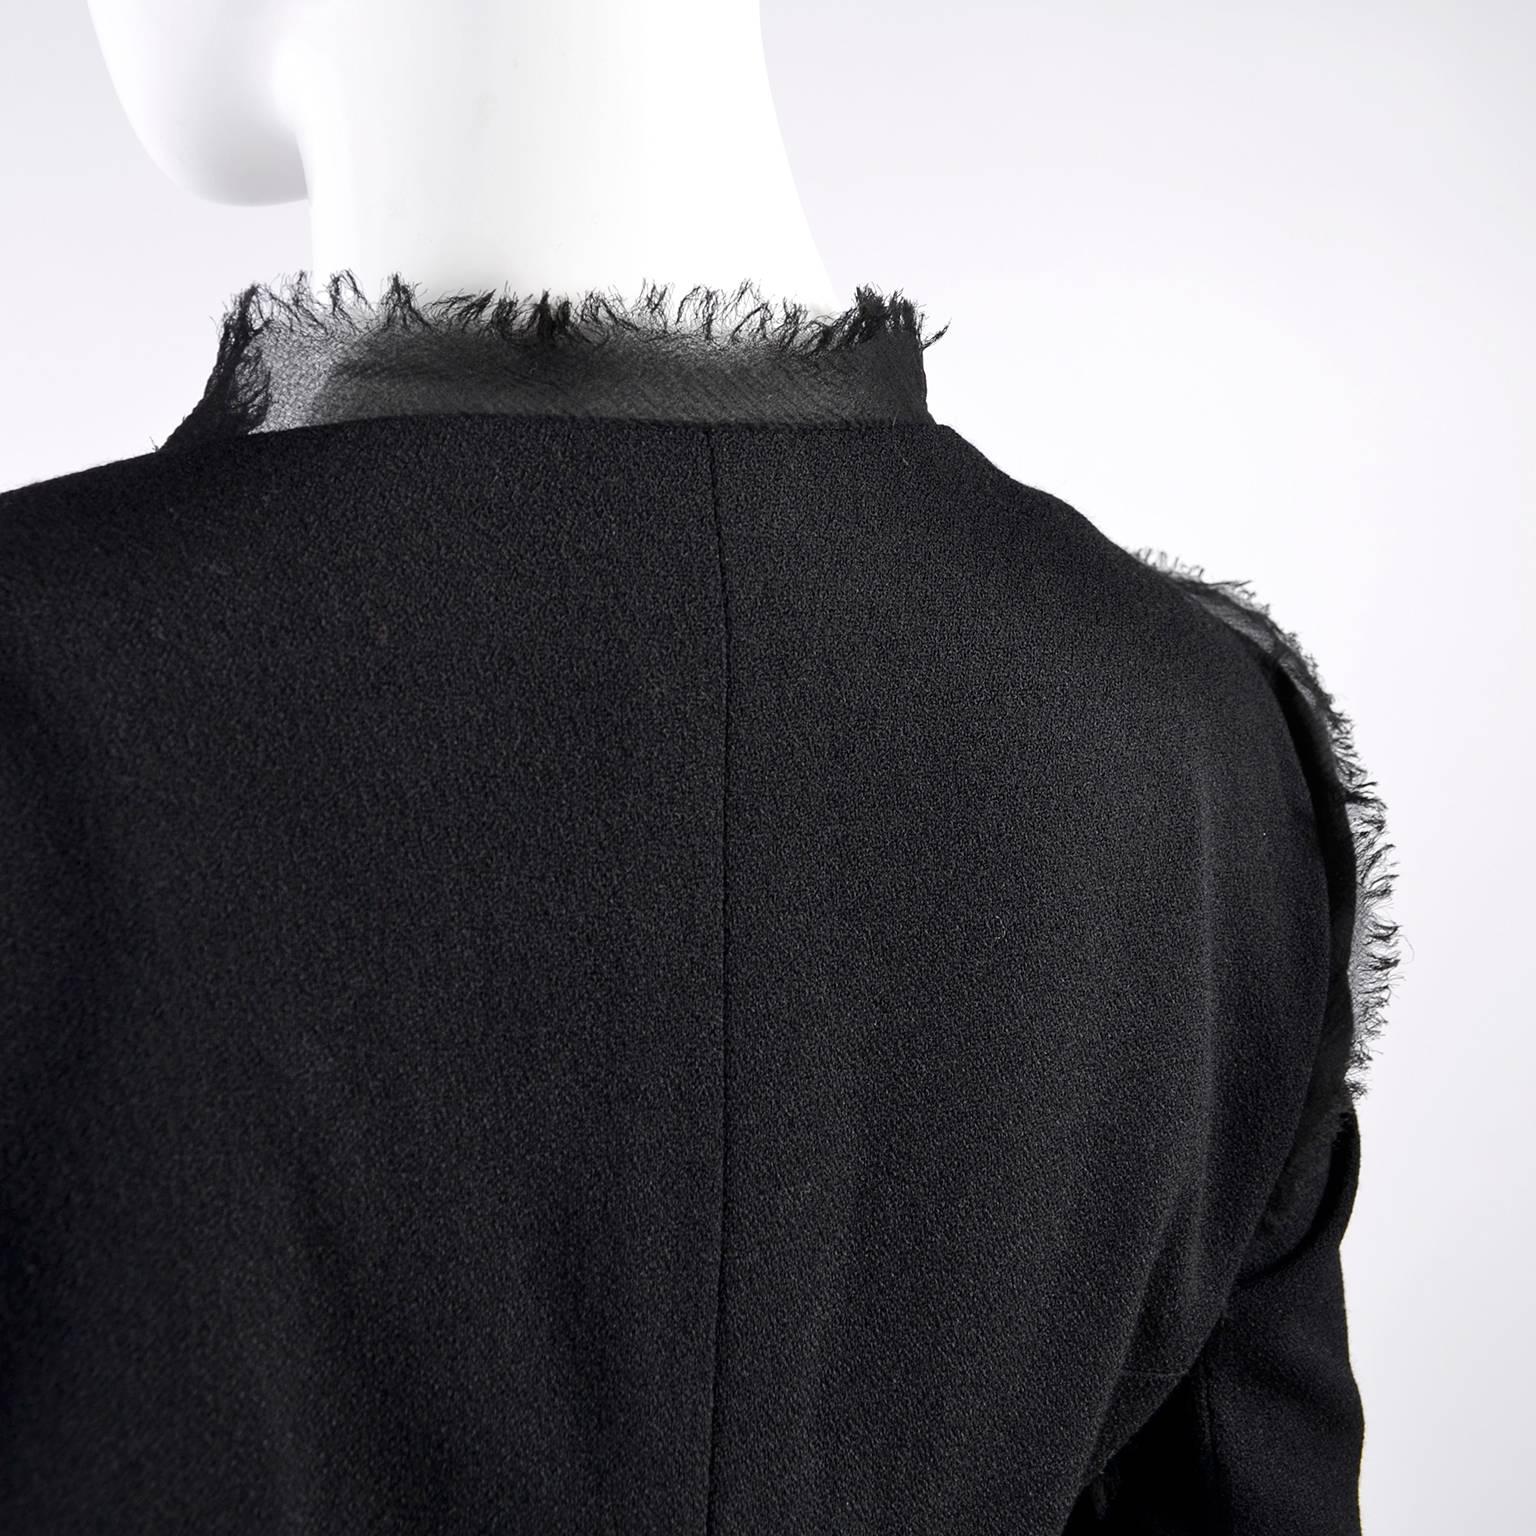 2004 Black Silk & Wool Chanel Jacket Ruching W Frayed Edges New w/ Tag 04 Sz 38 12